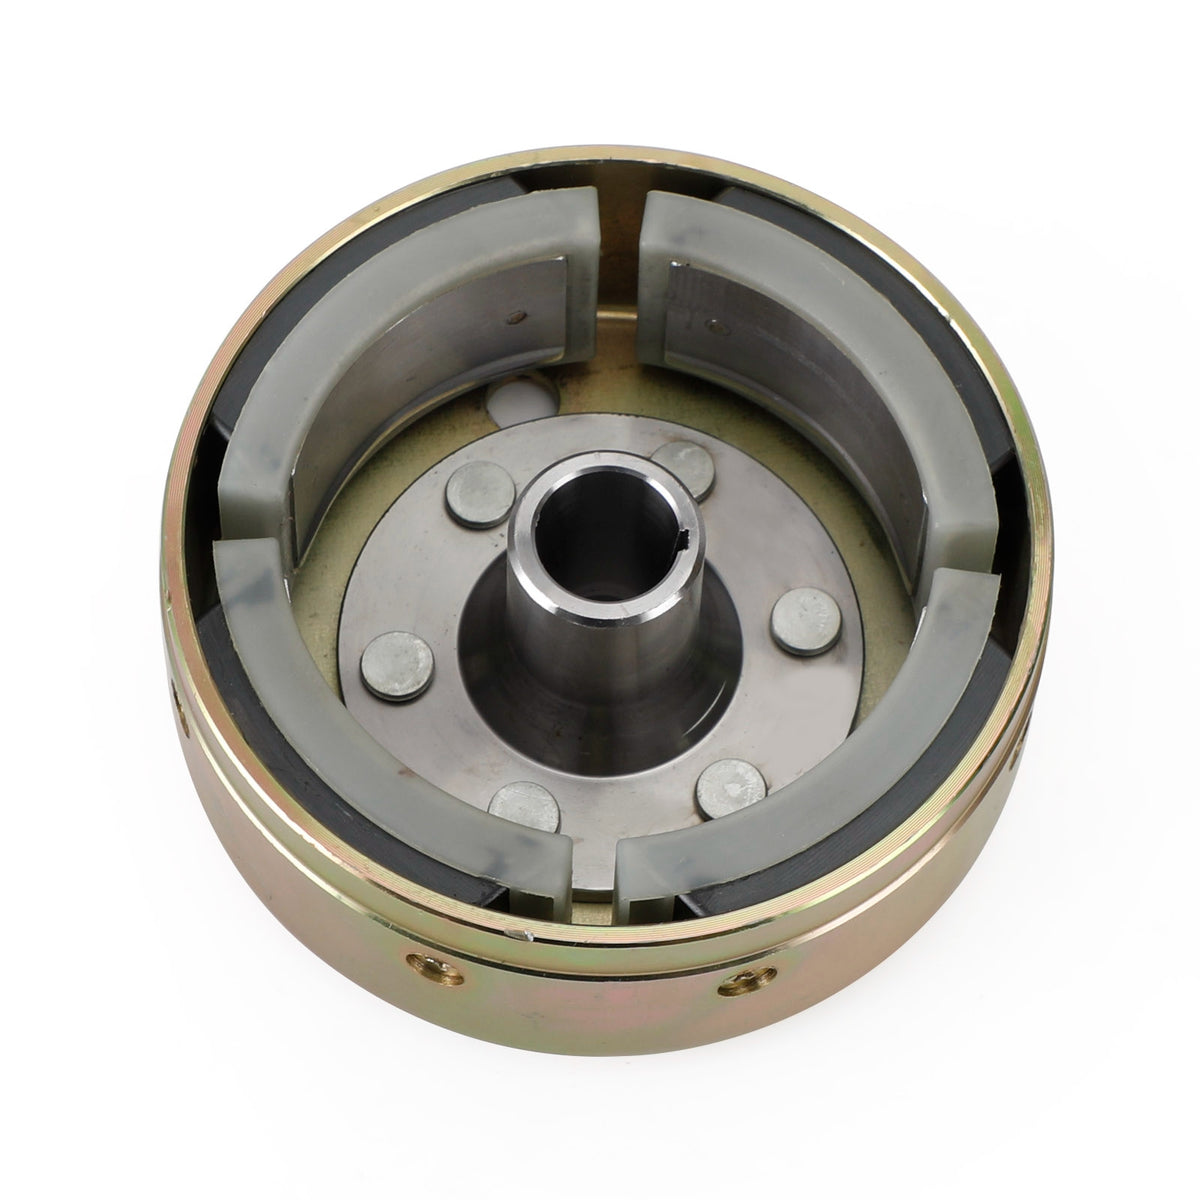 NEW Stator Flywheel Generator Rotor For Yamaha 2XJ-85550-M0-00 2XJ-85550-M1-00